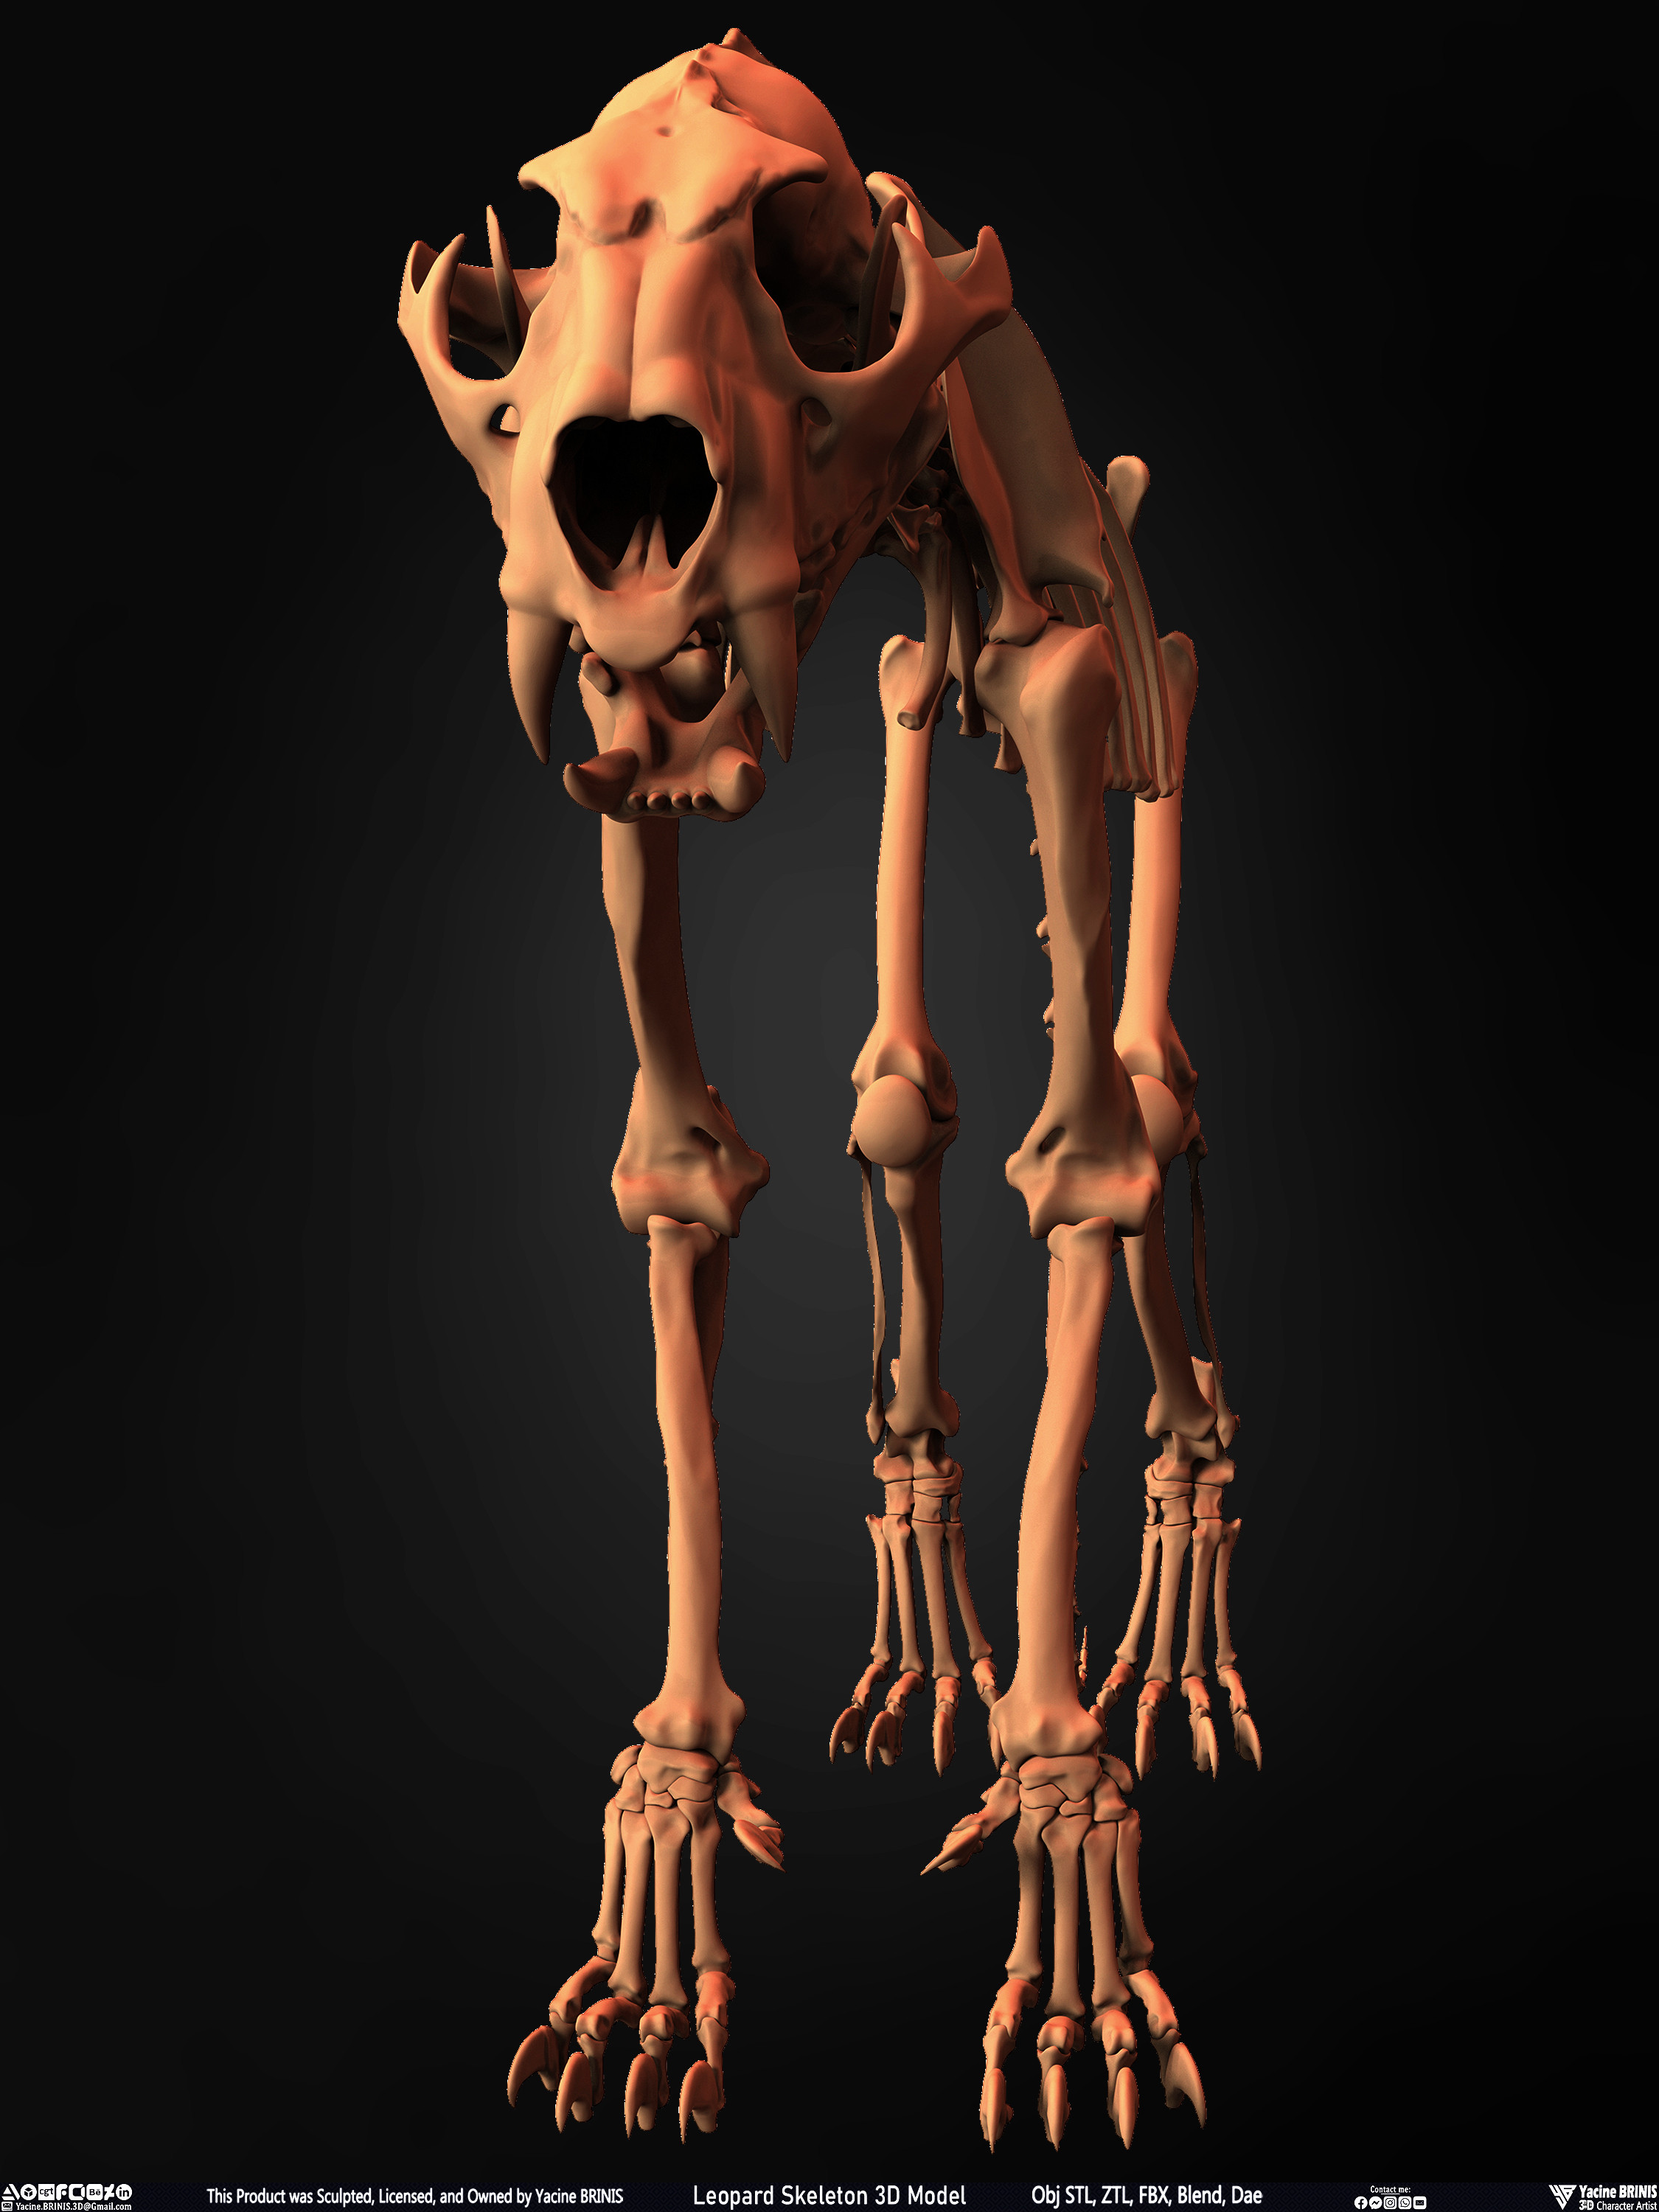 Leopard Skeleton 3D Model Sculpted By Yacine BRINIS 005